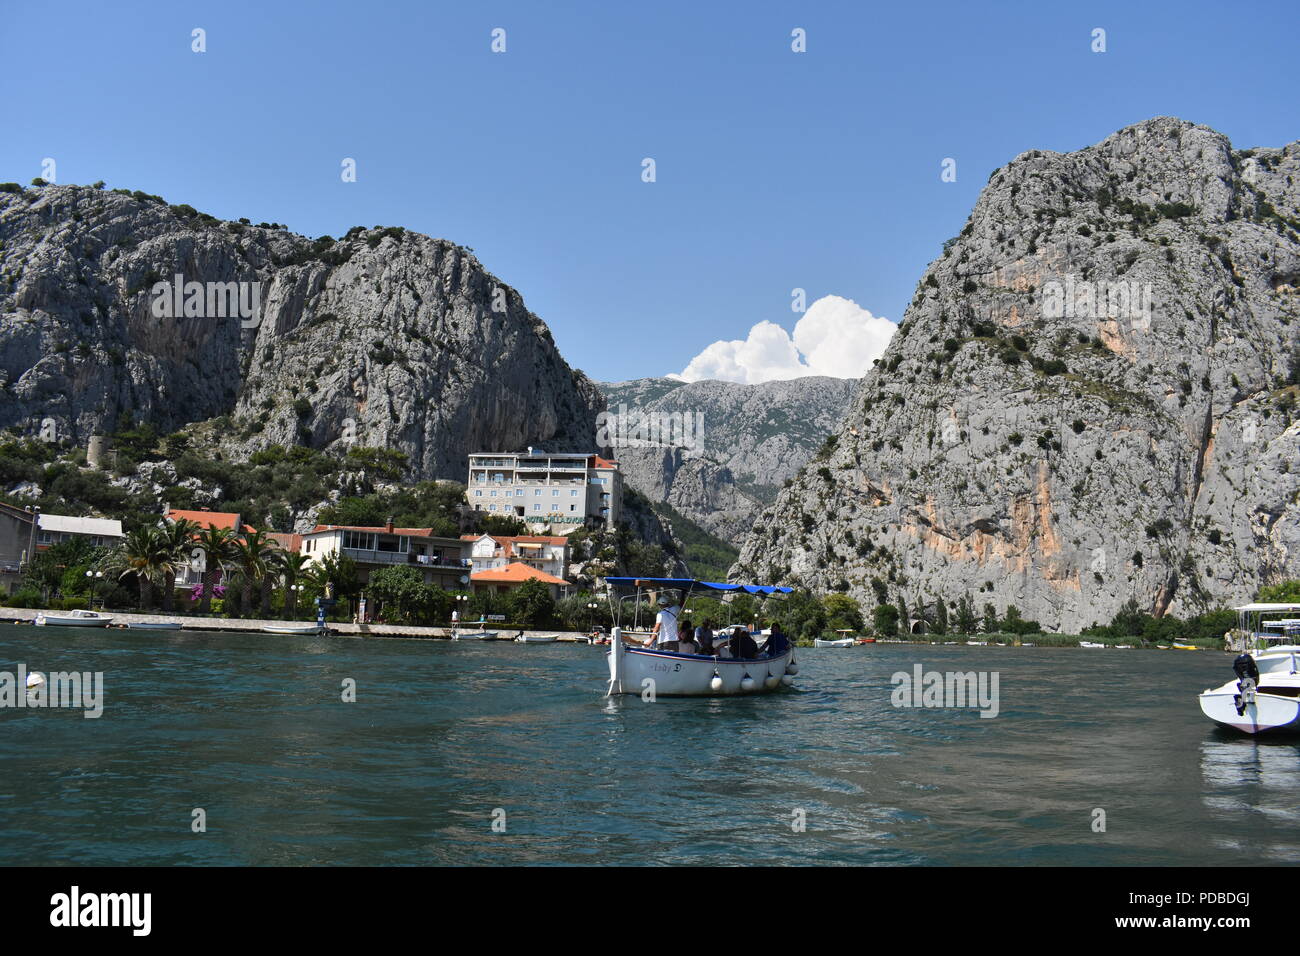 Bootsfahrten auf dem Fluss in Omis Kroatien an den Sehenswürdigkeiten finden Sie in den schönen Bergen und Klamm in einer hellen blauen sonnigen Tag Stockfoto